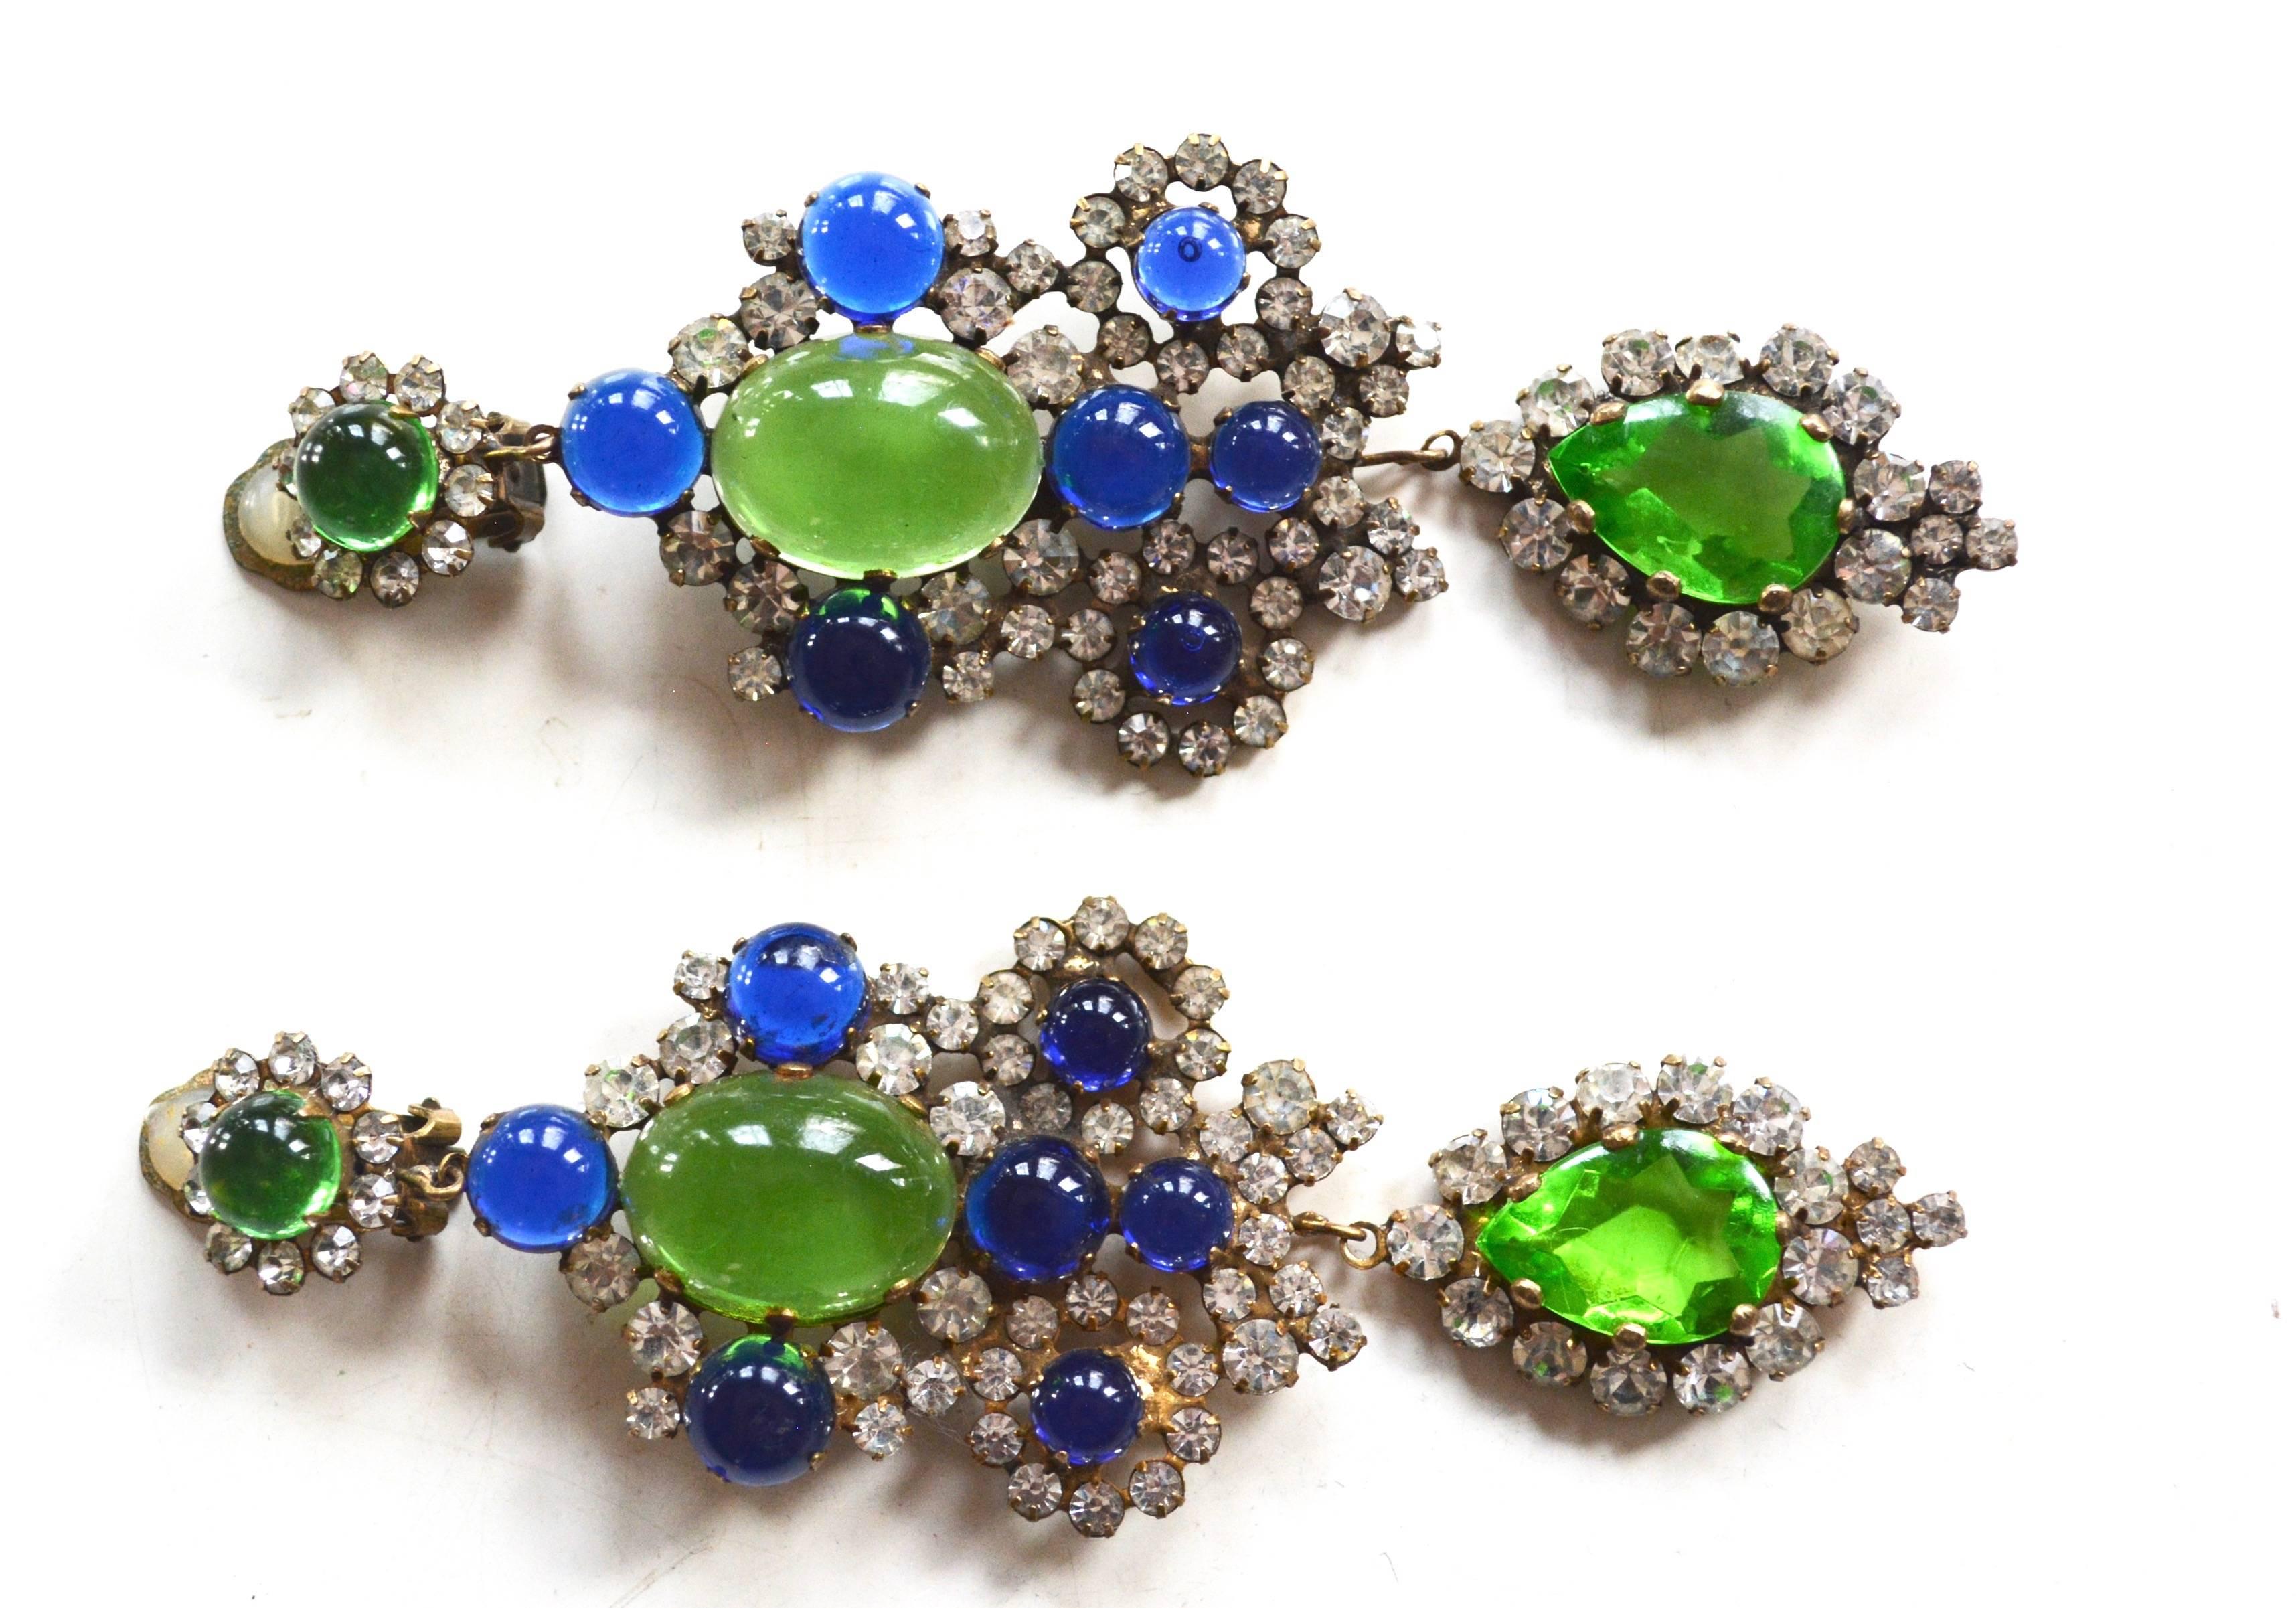 Blue, green, and rhinestone chandelier earrings by Kenneth Jay Lane, signed K.J.L. 4.5